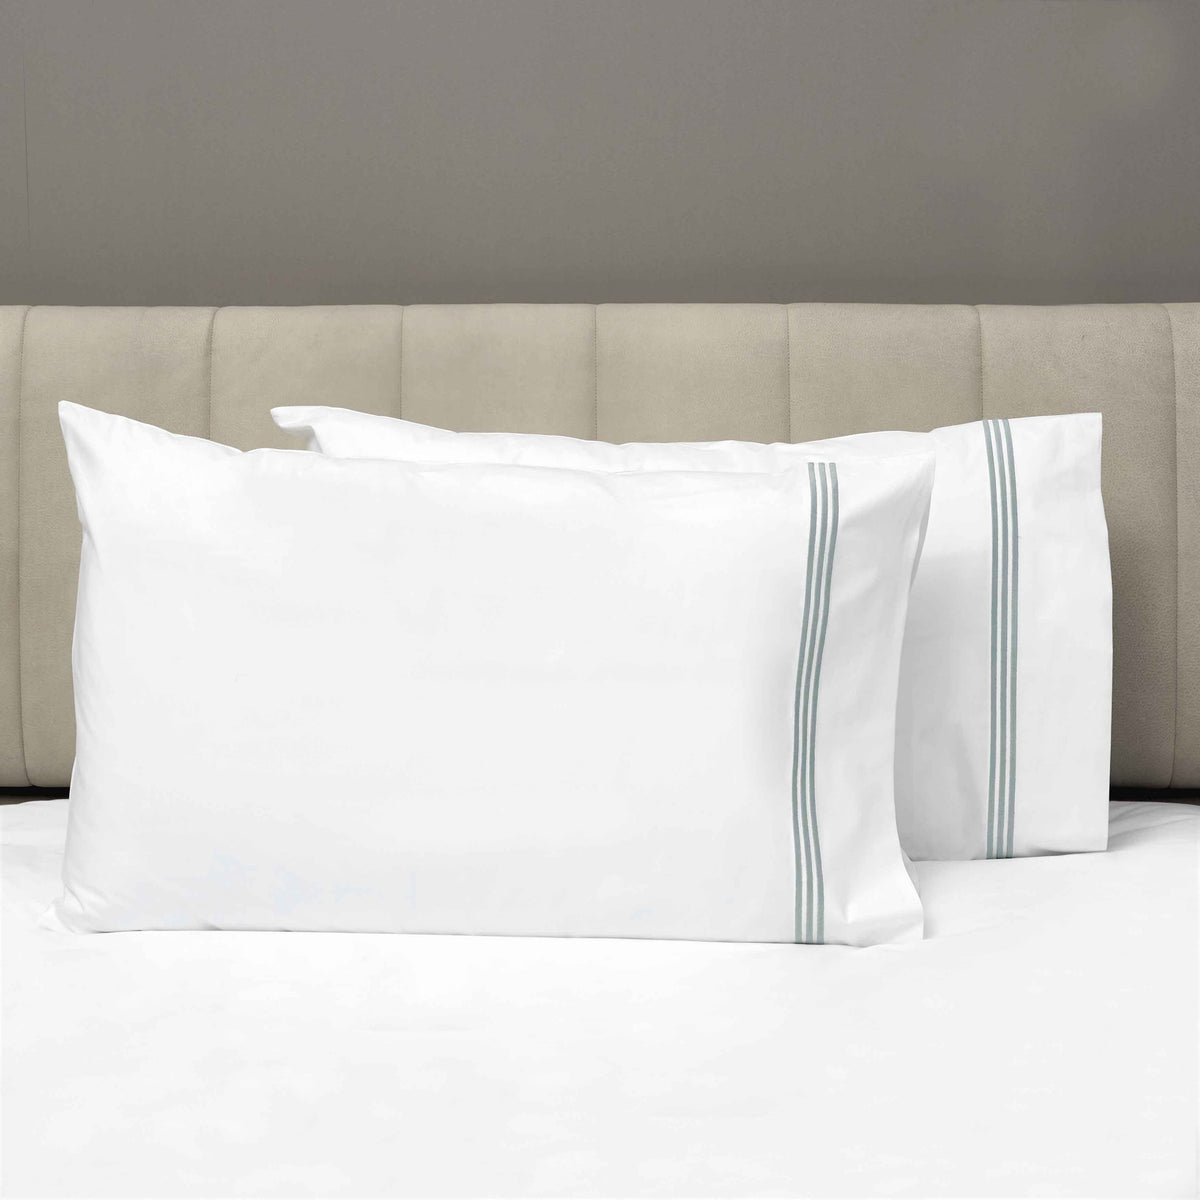 Pair of Pillowcases of Signoria Platinum Percale Bedding in White/Wilton Blue Color